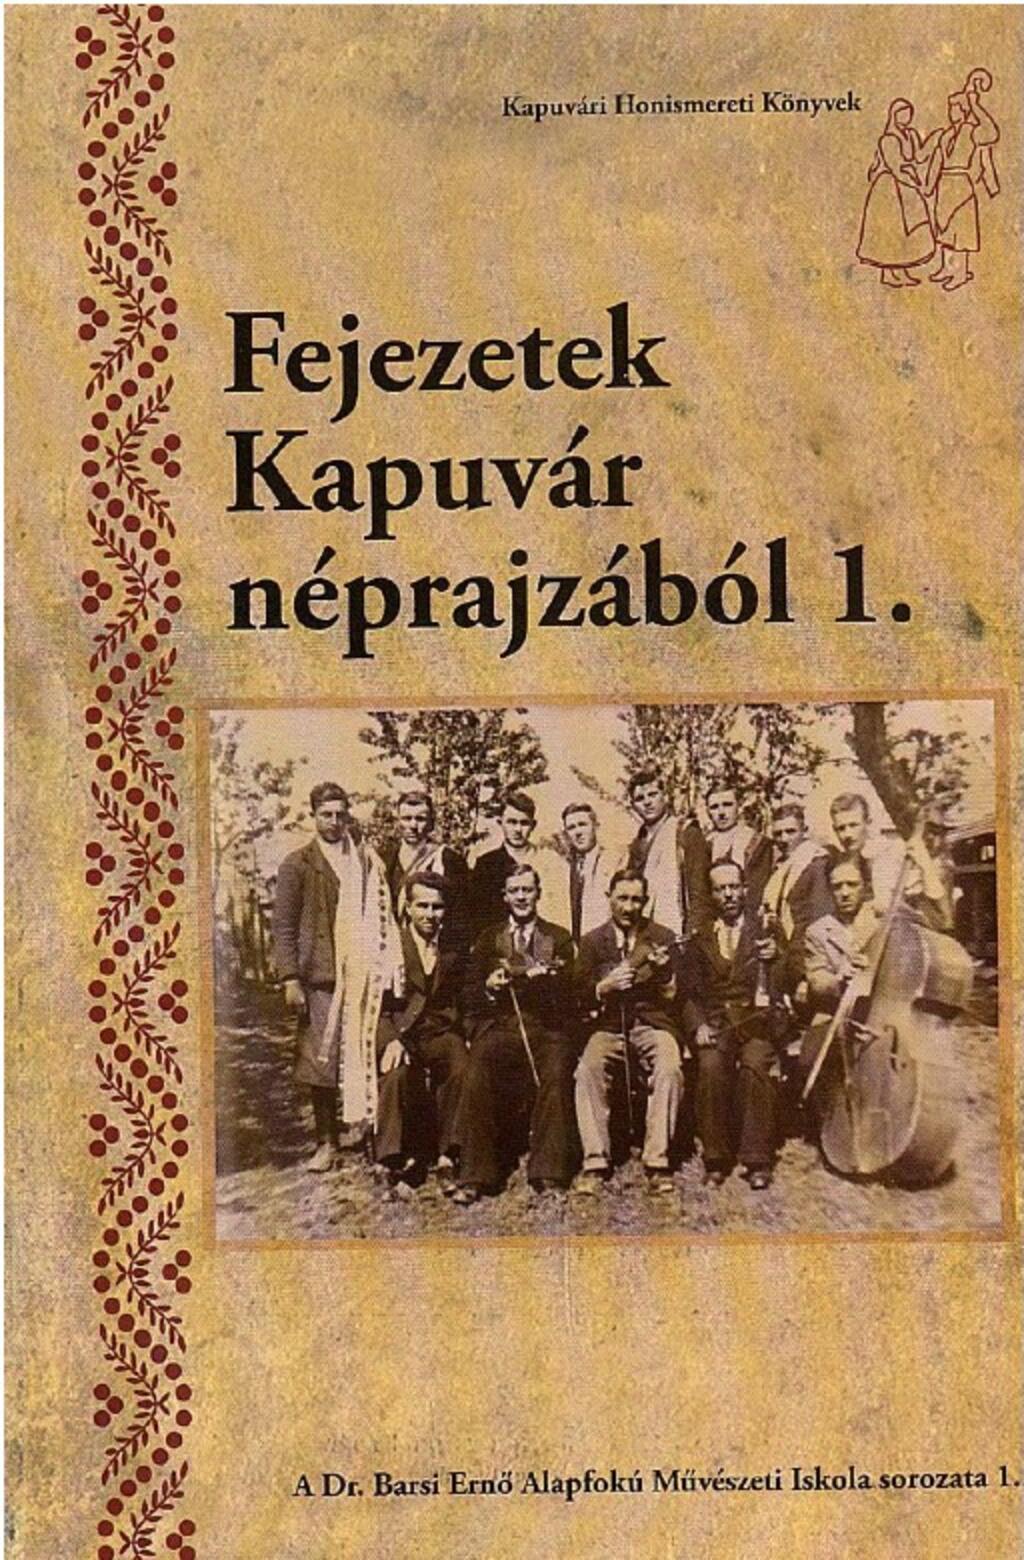 Kapuvri Honismereti Knyvek - Fejezetek Kapuvr nprajzbl 1.